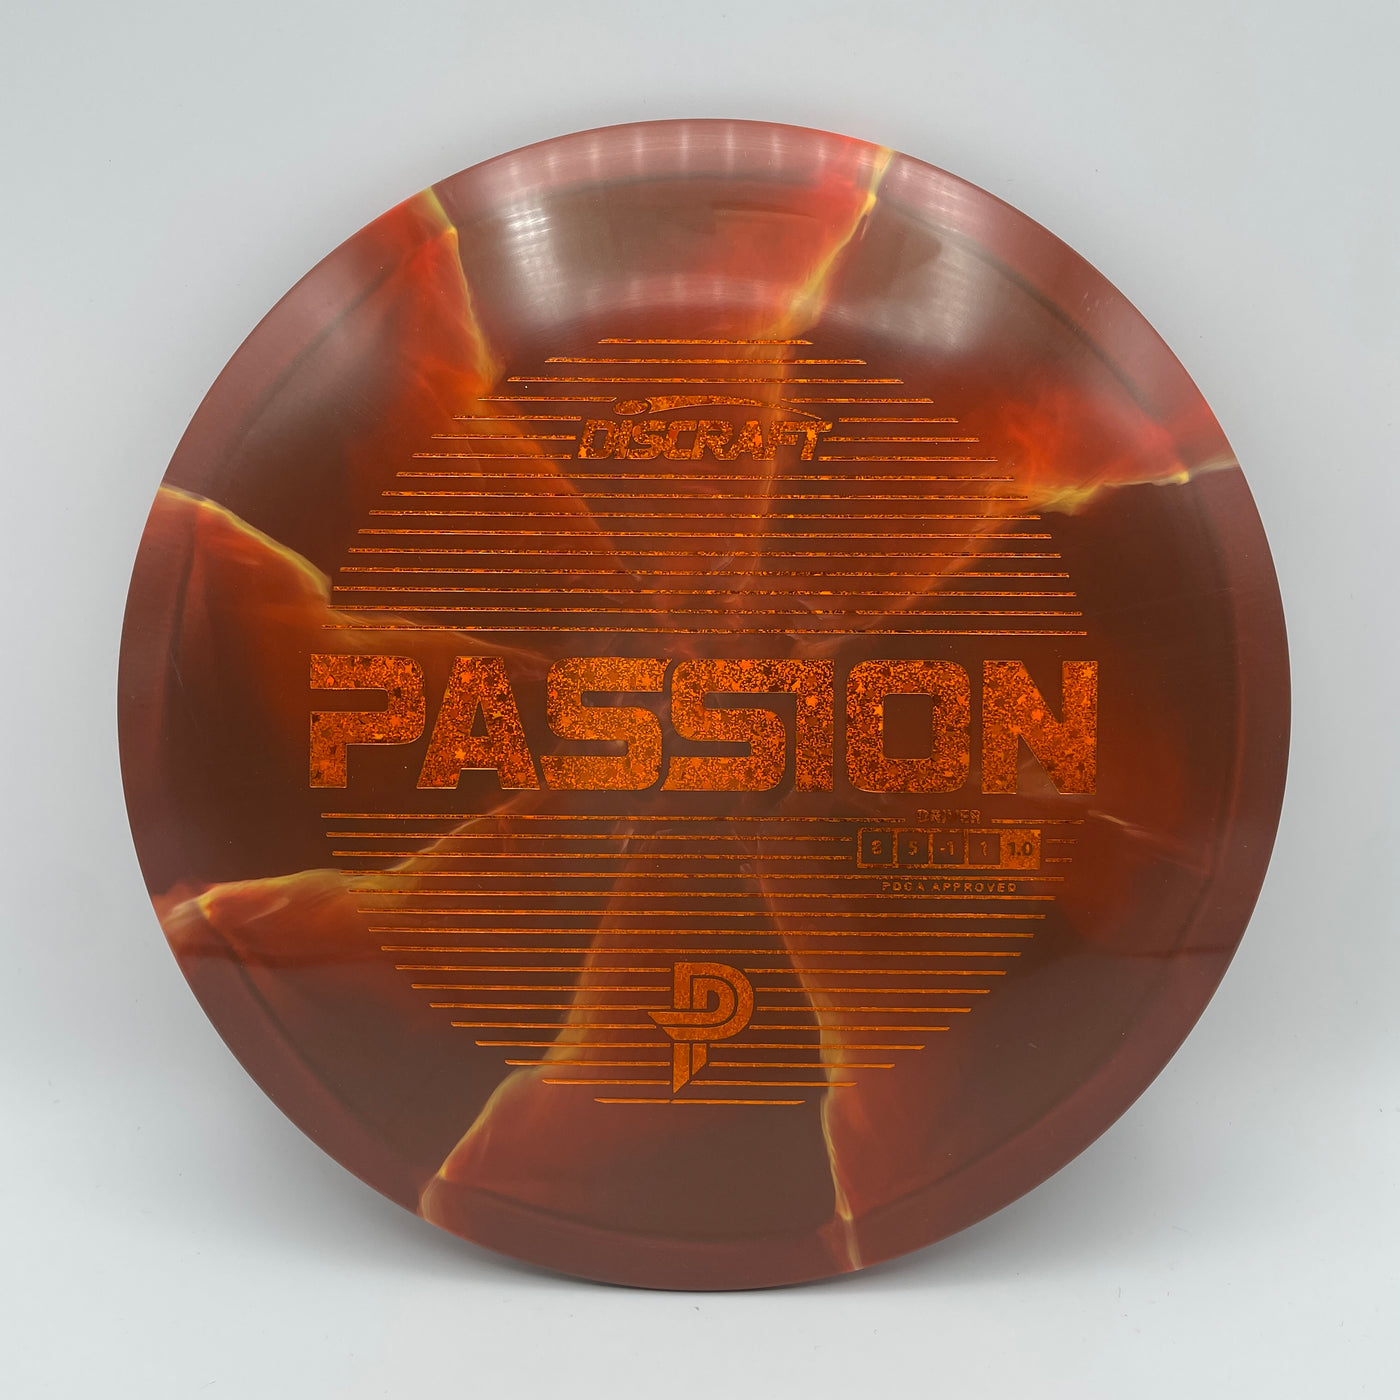 Paige Pierce ESP Passion